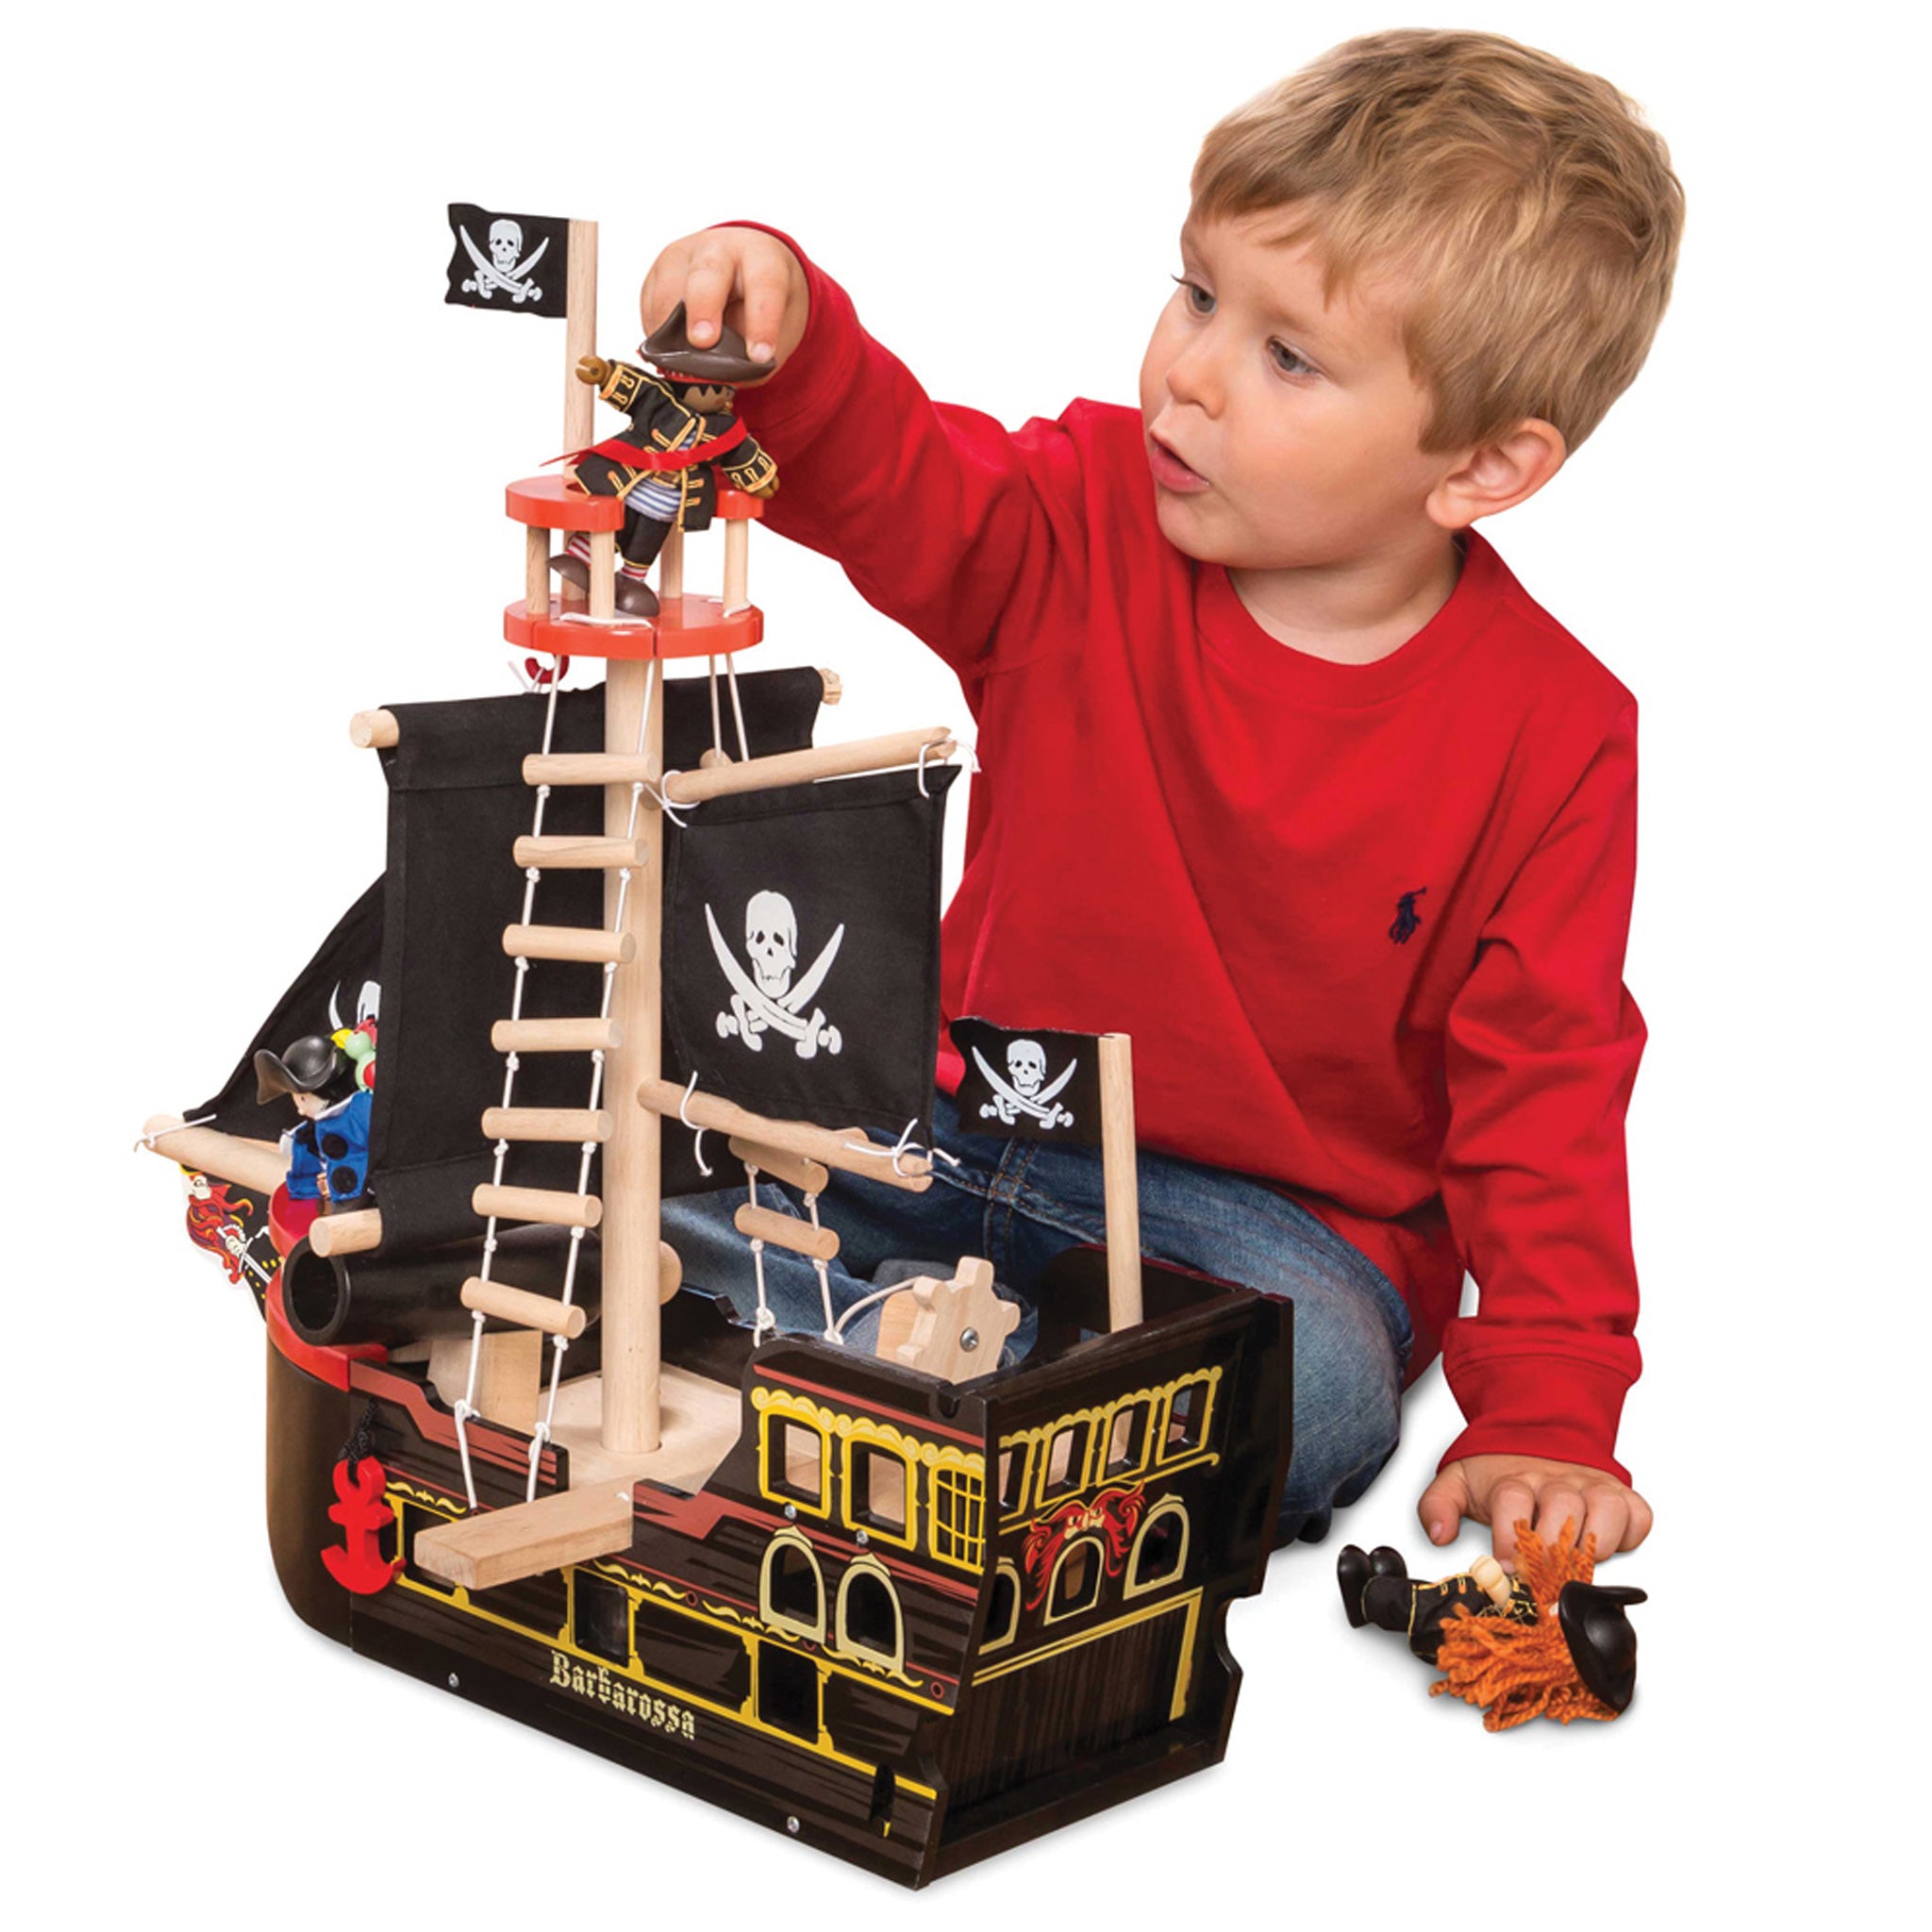 Купить подарок мальчику 10. Игровой набор пиратский корабль Барбаросса le Toy van tv246. Пиратский корабль Барбаросса, le Toy van. Le Toy van пиратский корабль. Подарок мальчику.